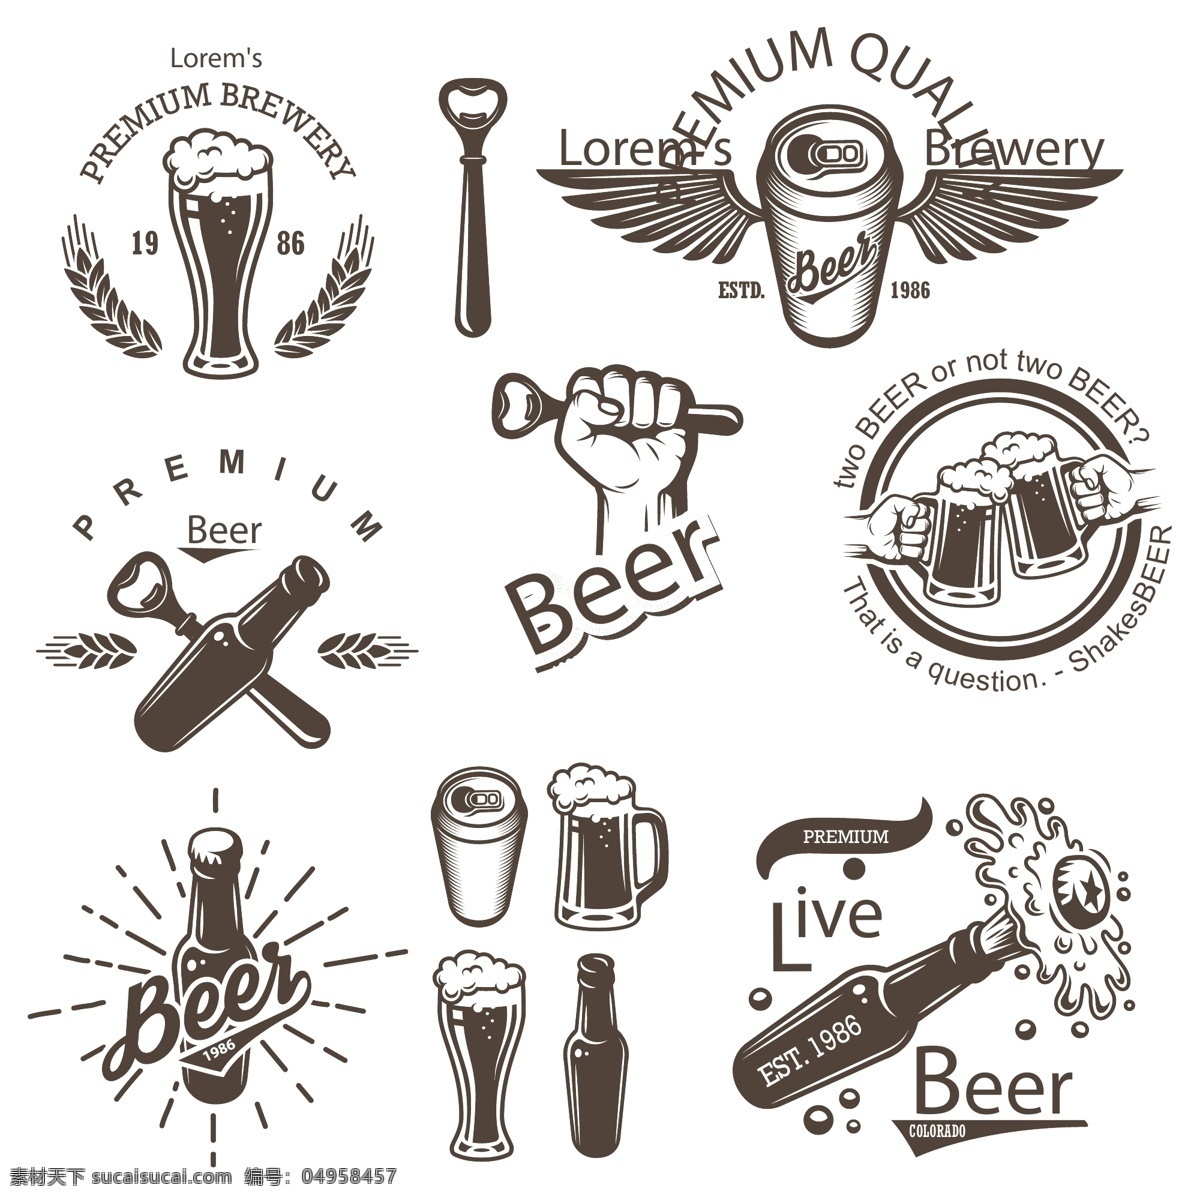 啤酒 logo 矢量 杯子 酒瓶 灰色 矢量素材 设计素材